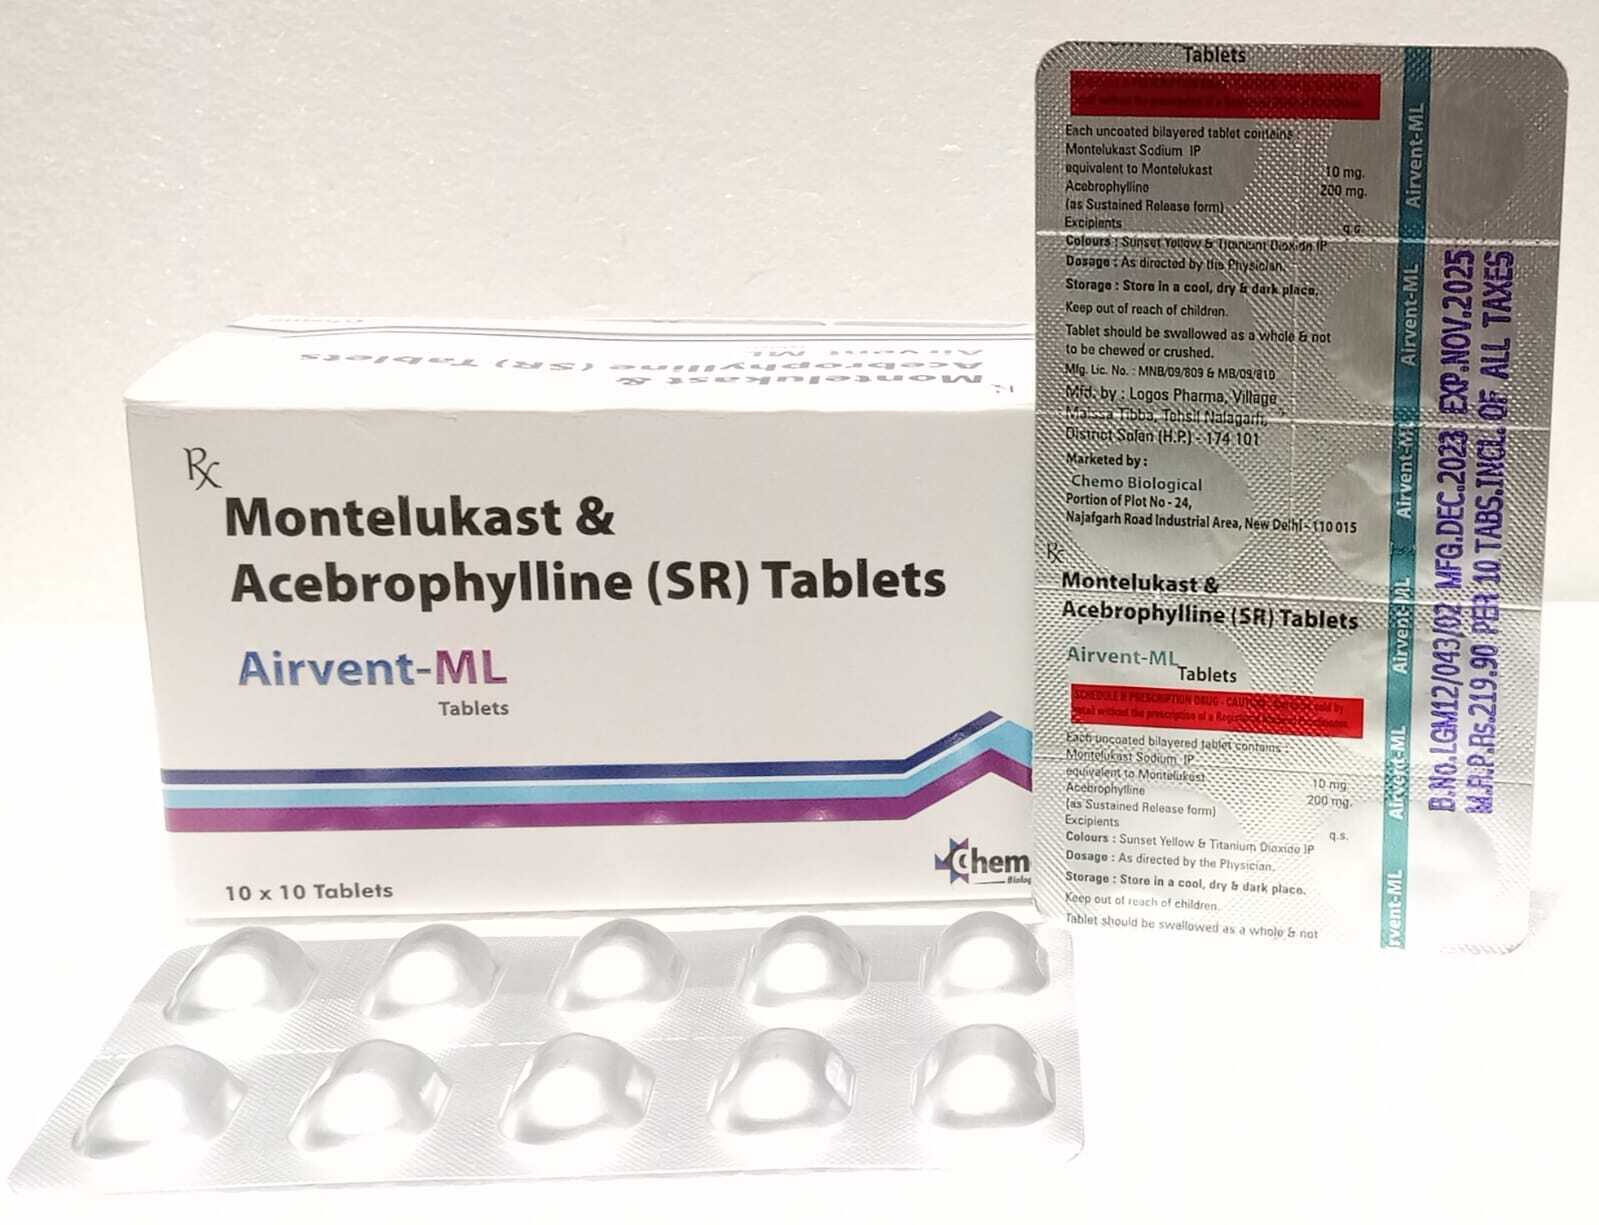 Acebrophylline 200 mg SR + Montelukast 10 mg tablets